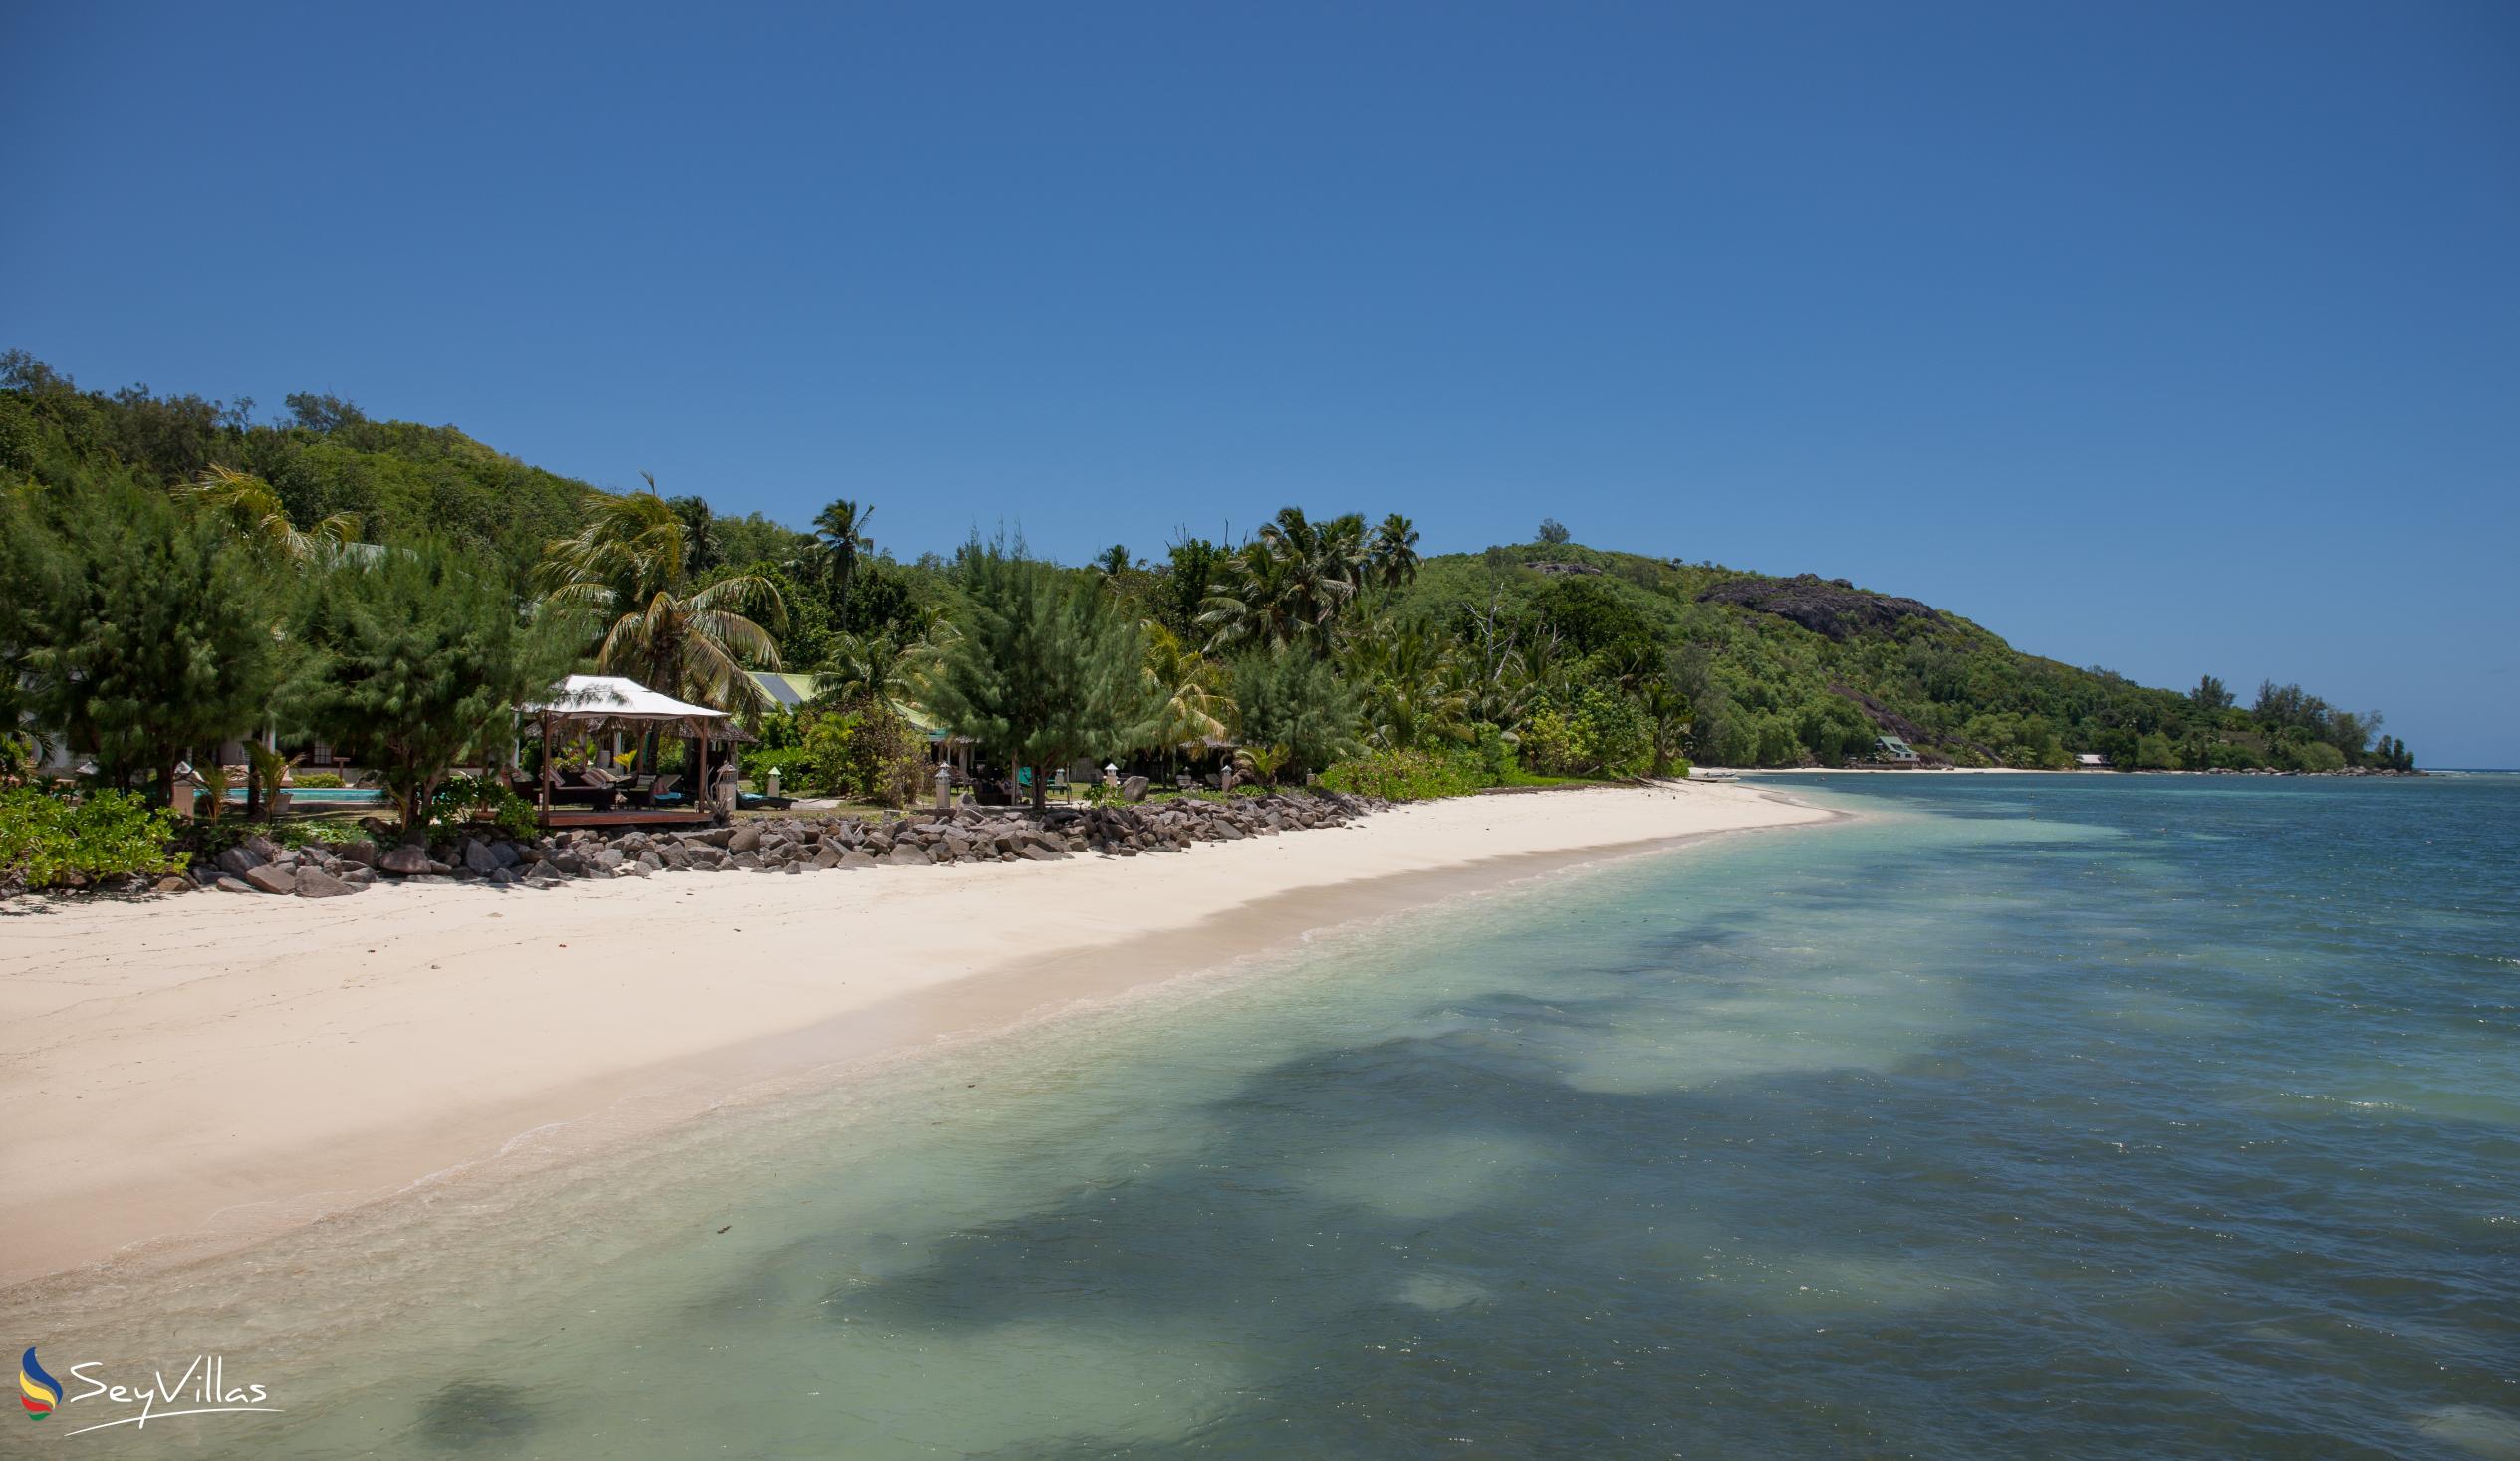 Foto 45: Surf Tropical Villa (Takamaka Beach Villas) - Aussenbereich - Cerf Island (Seychellen)